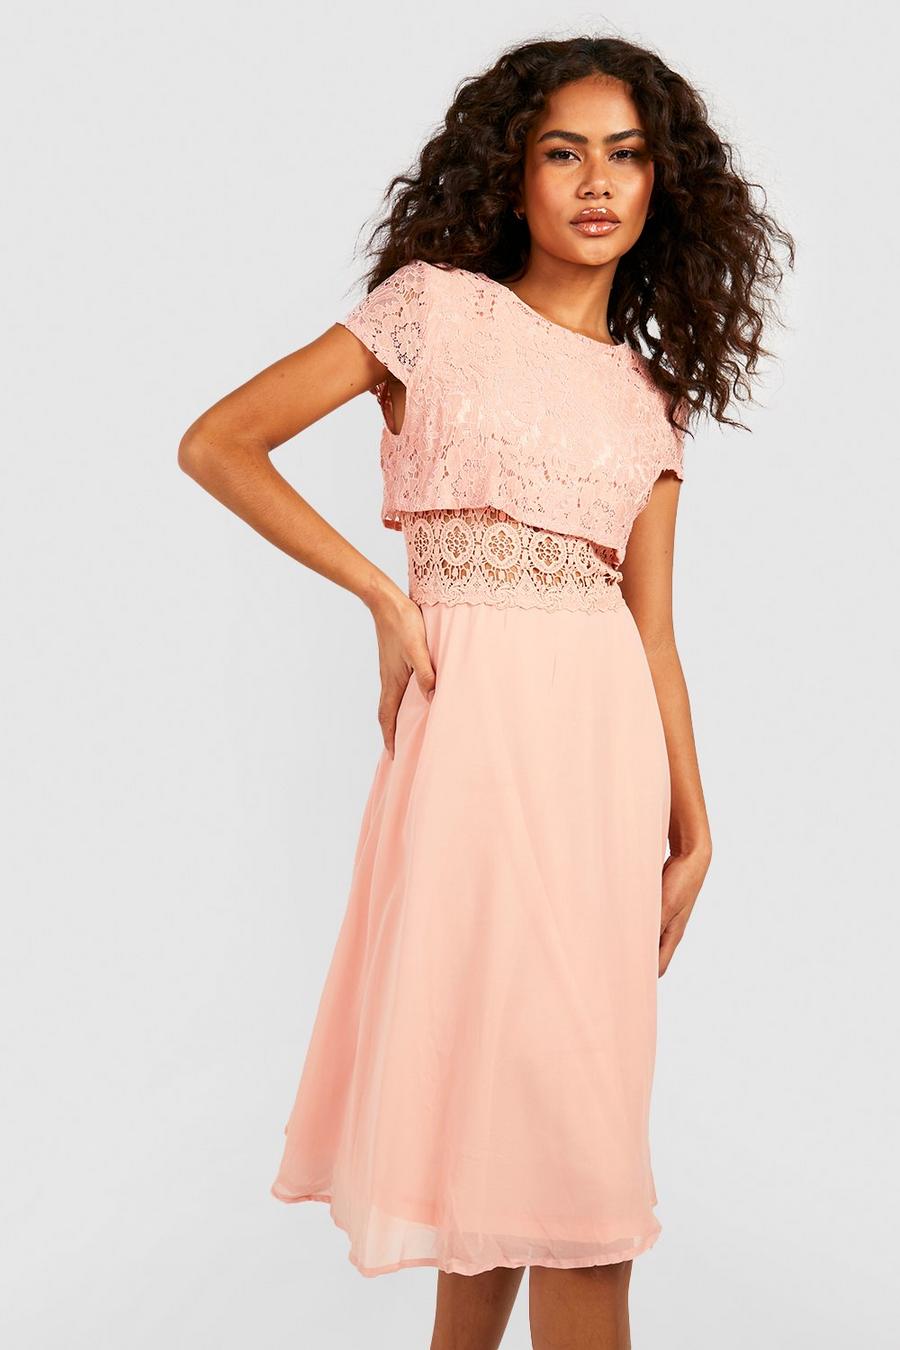 סמוק pink שמלת סקייטר מבד שיפון עם טופ תחרה